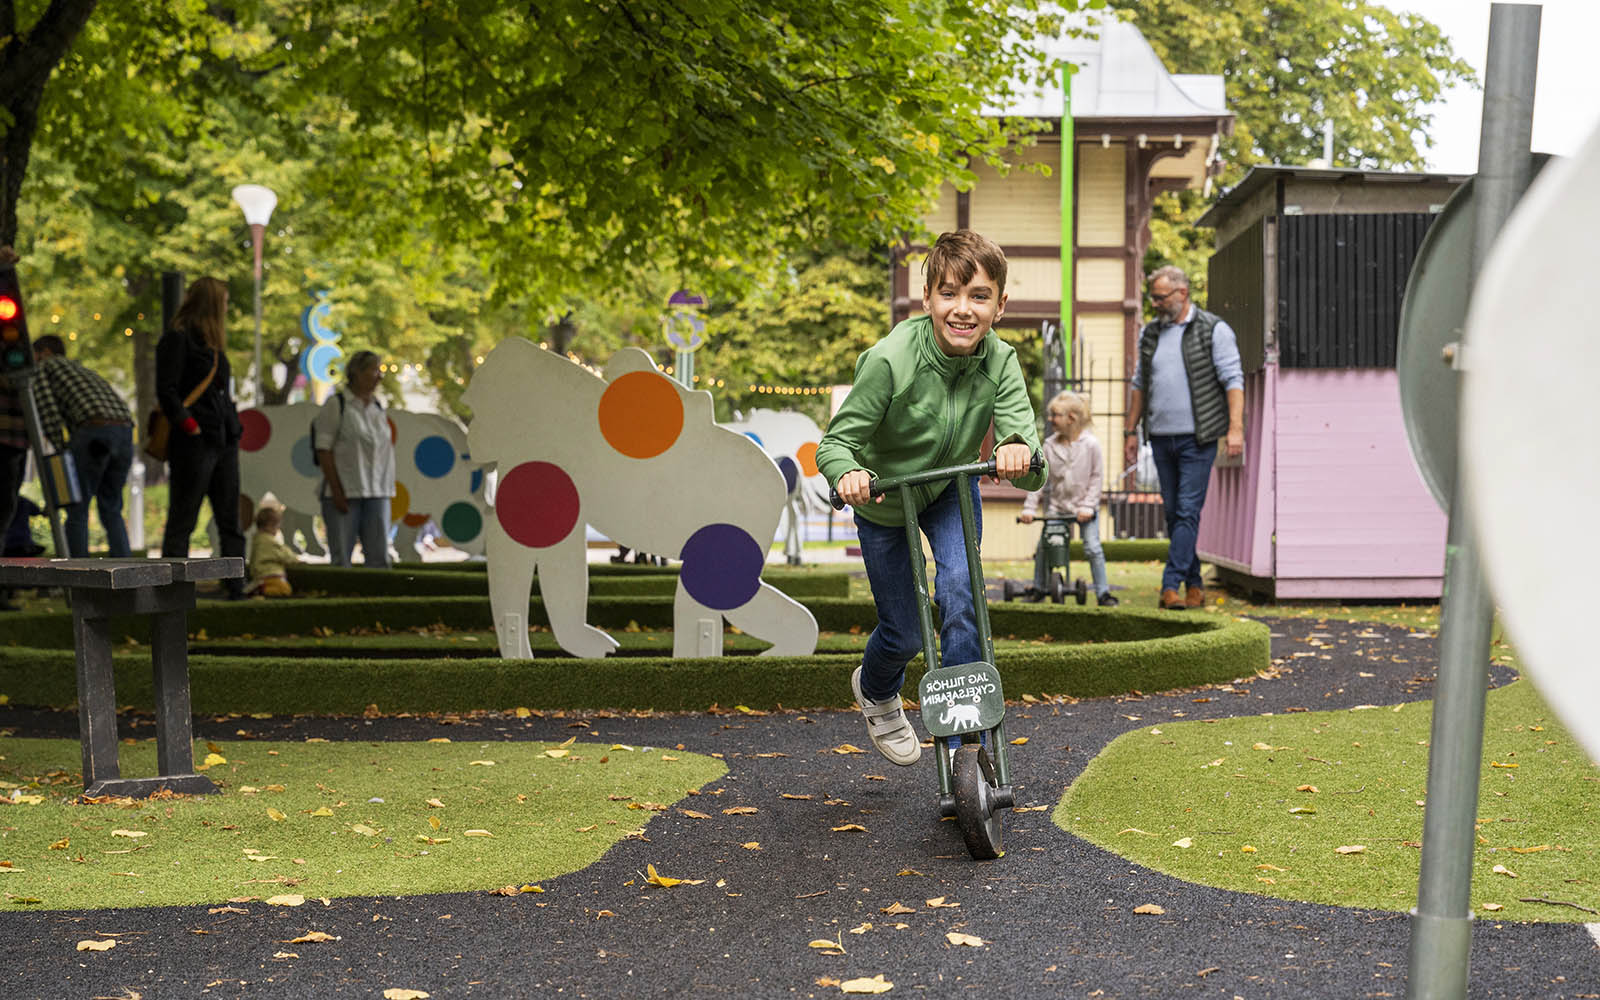 En pojke med brunt hår och en grön tröja åker på en sparkcykel i en lekpark. Bakom ser man en asfalterad stig, gräsmatta och vita trädjur med prickar på.